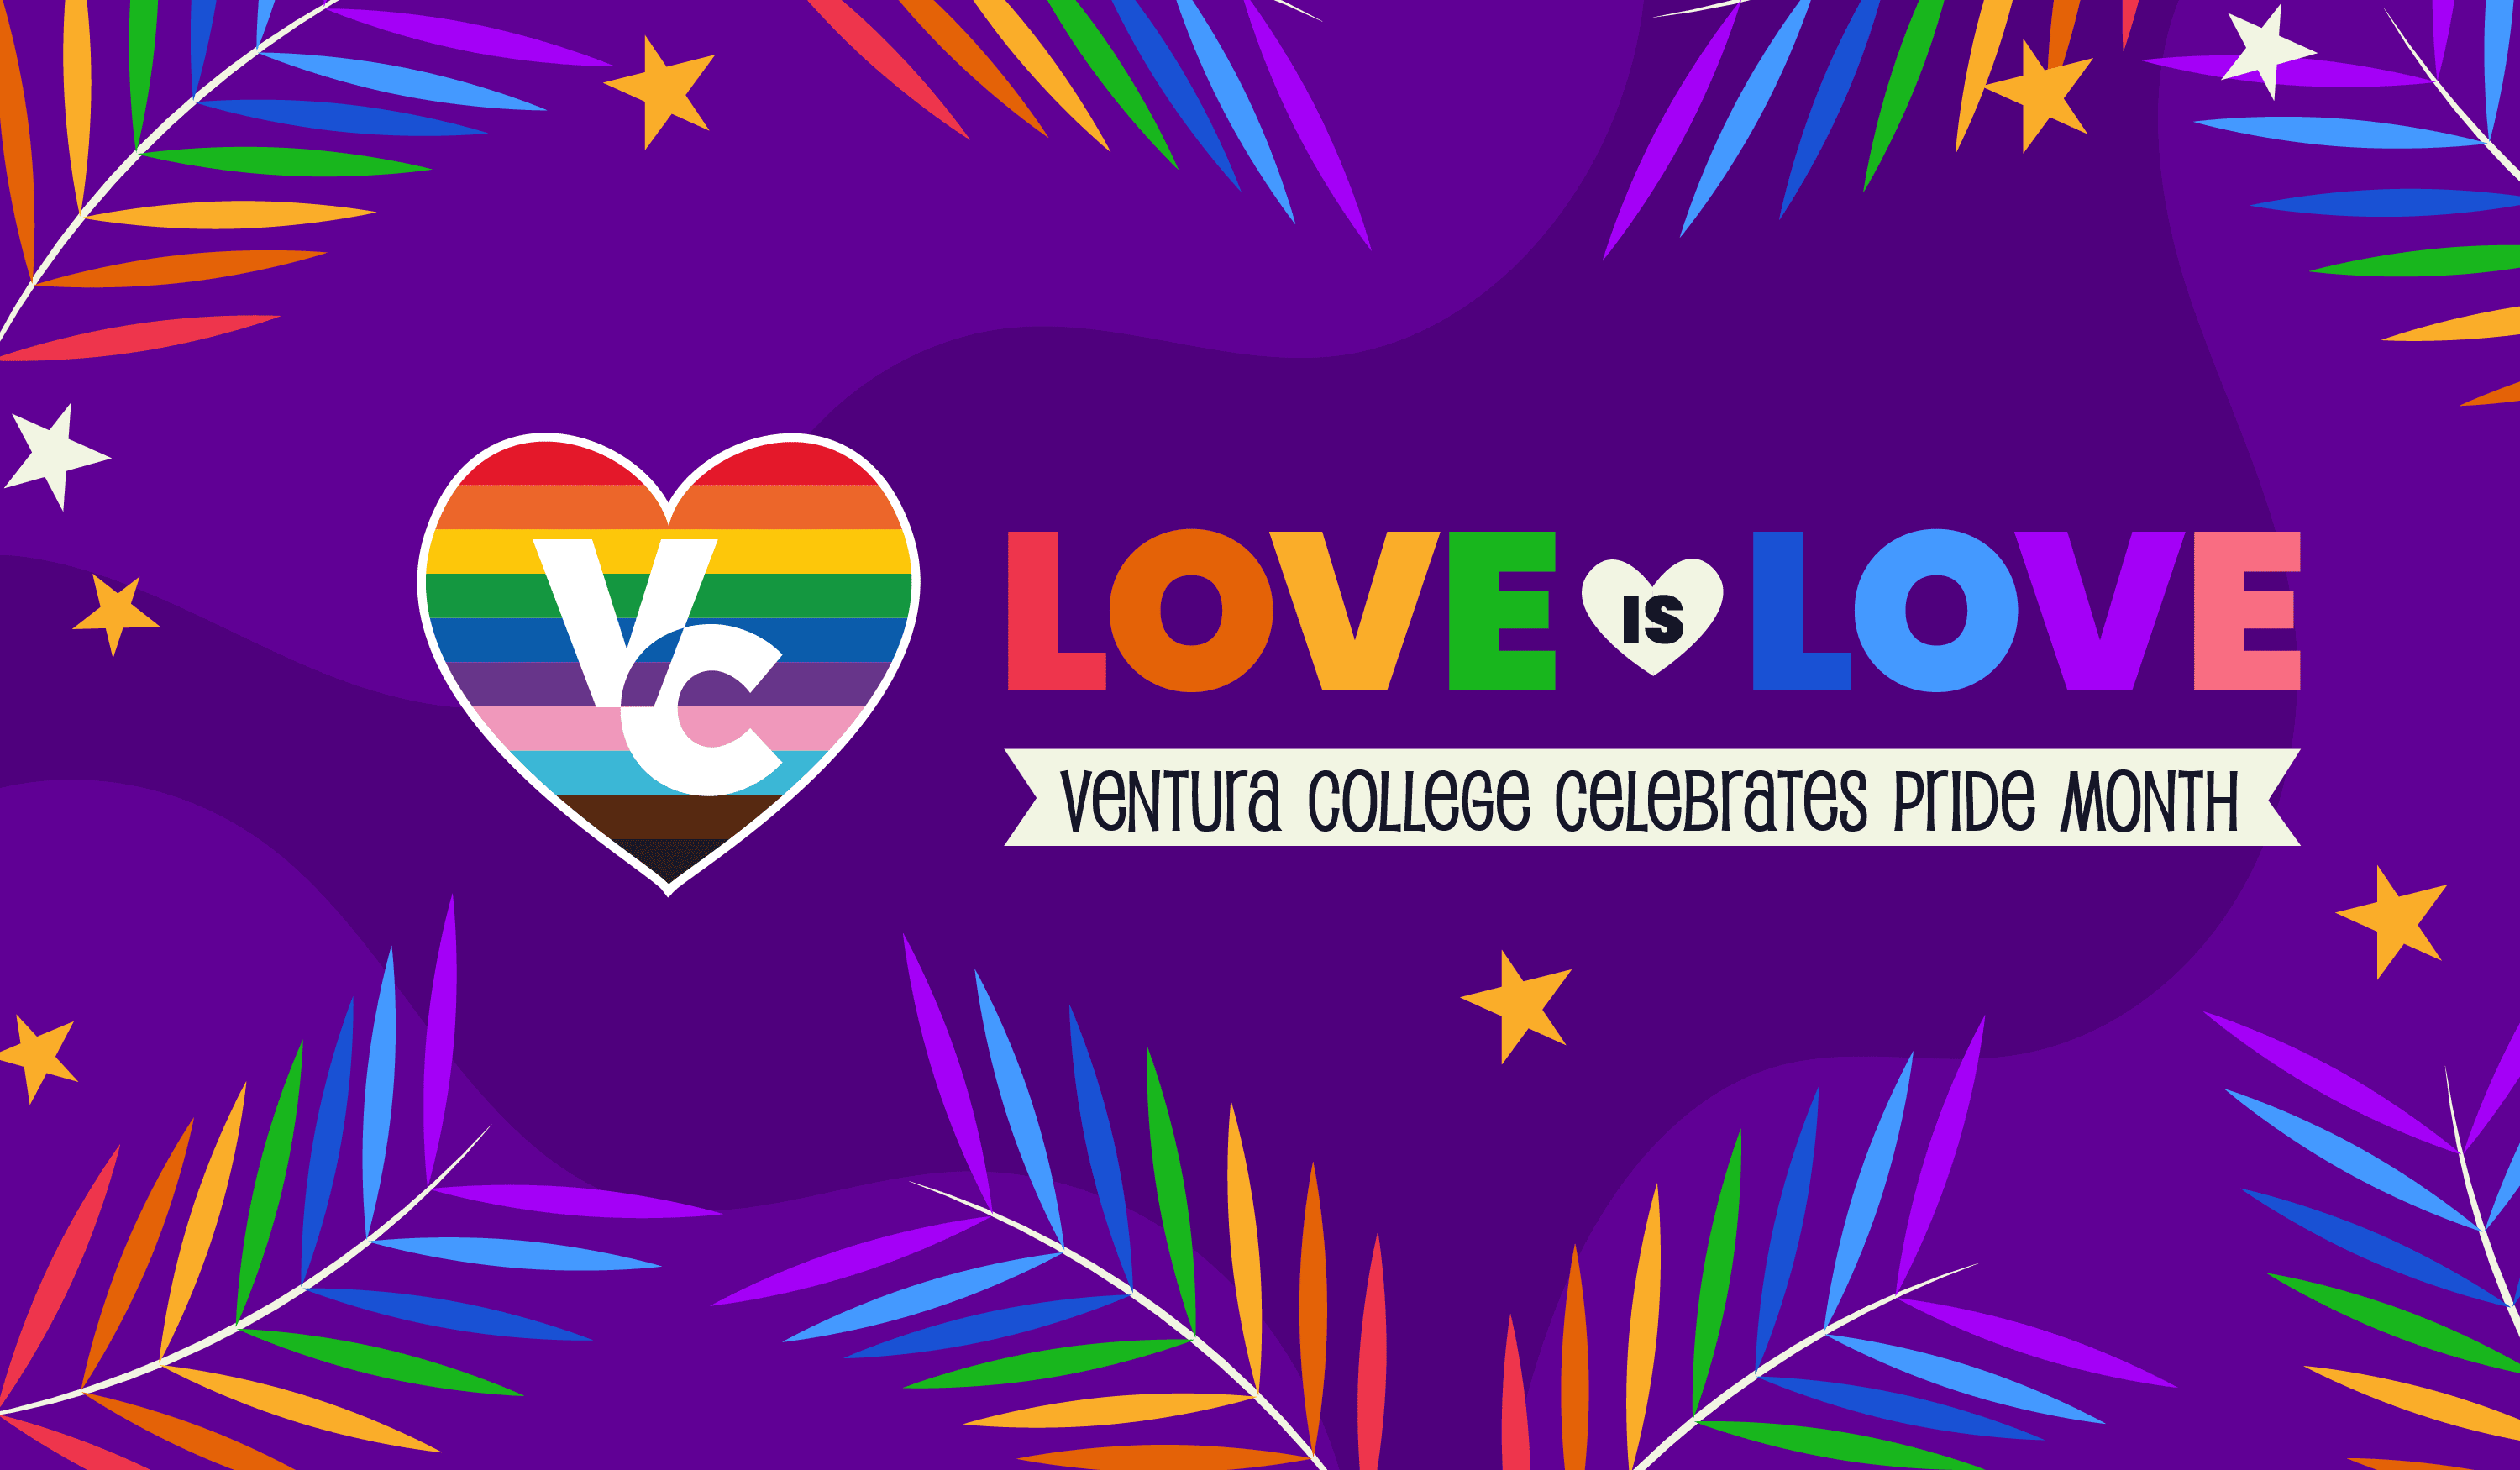 love is love ventura college celebrates pride month